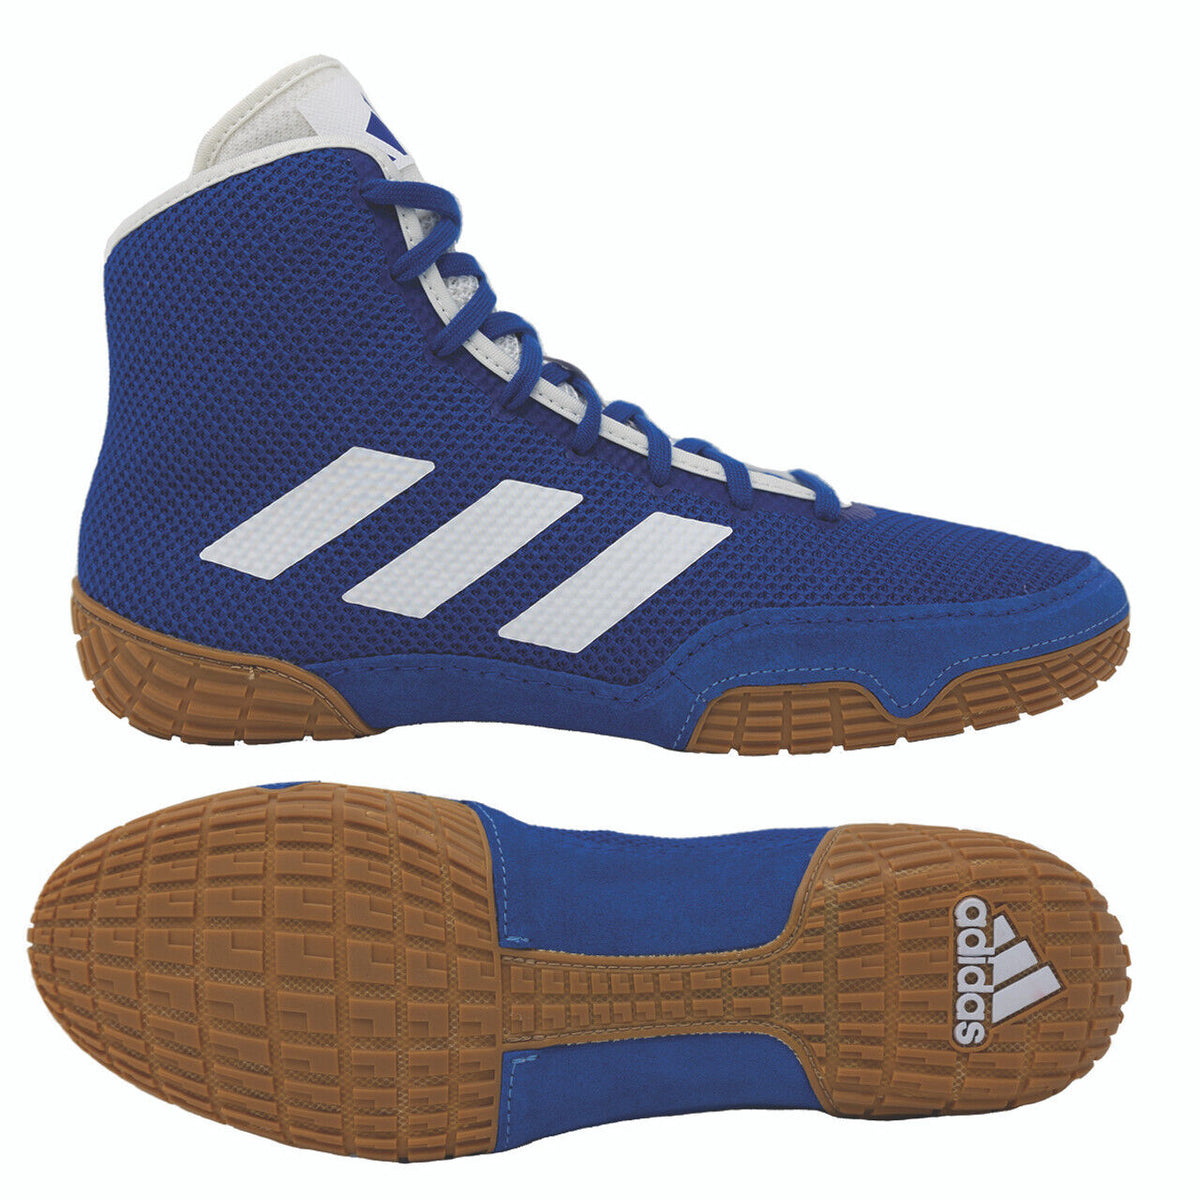 De Adidas Tech-Fall worstelschoenen in de kleur blauw. Nu tegen de beste prijs bij Phantom Athletics . Adidas worstelschoenen behoren tot de meest gewilde schoenen onder worstelaars wereldwijd, omdat ze superieure kwaliteit bieden in combinatie met ultiem comfort. De stevige zool zorgt voor grip op de worstelmat. 